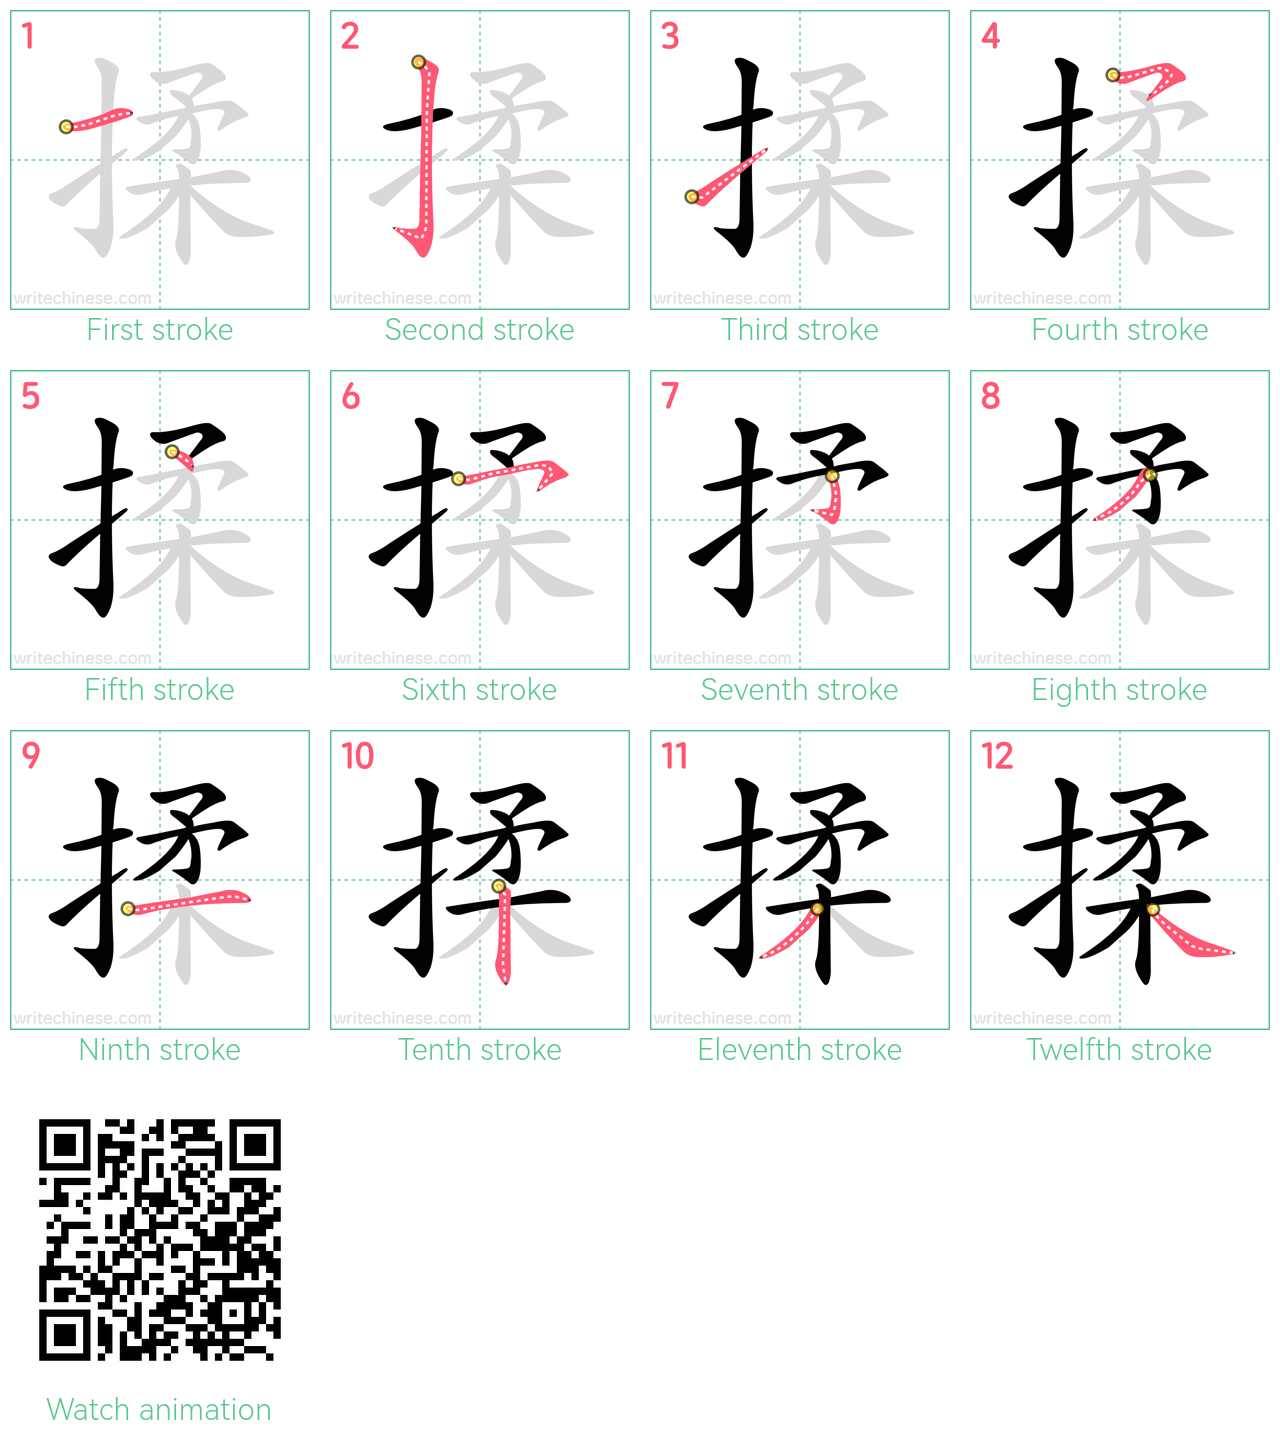 揉 step-by-step stroke order diagrams